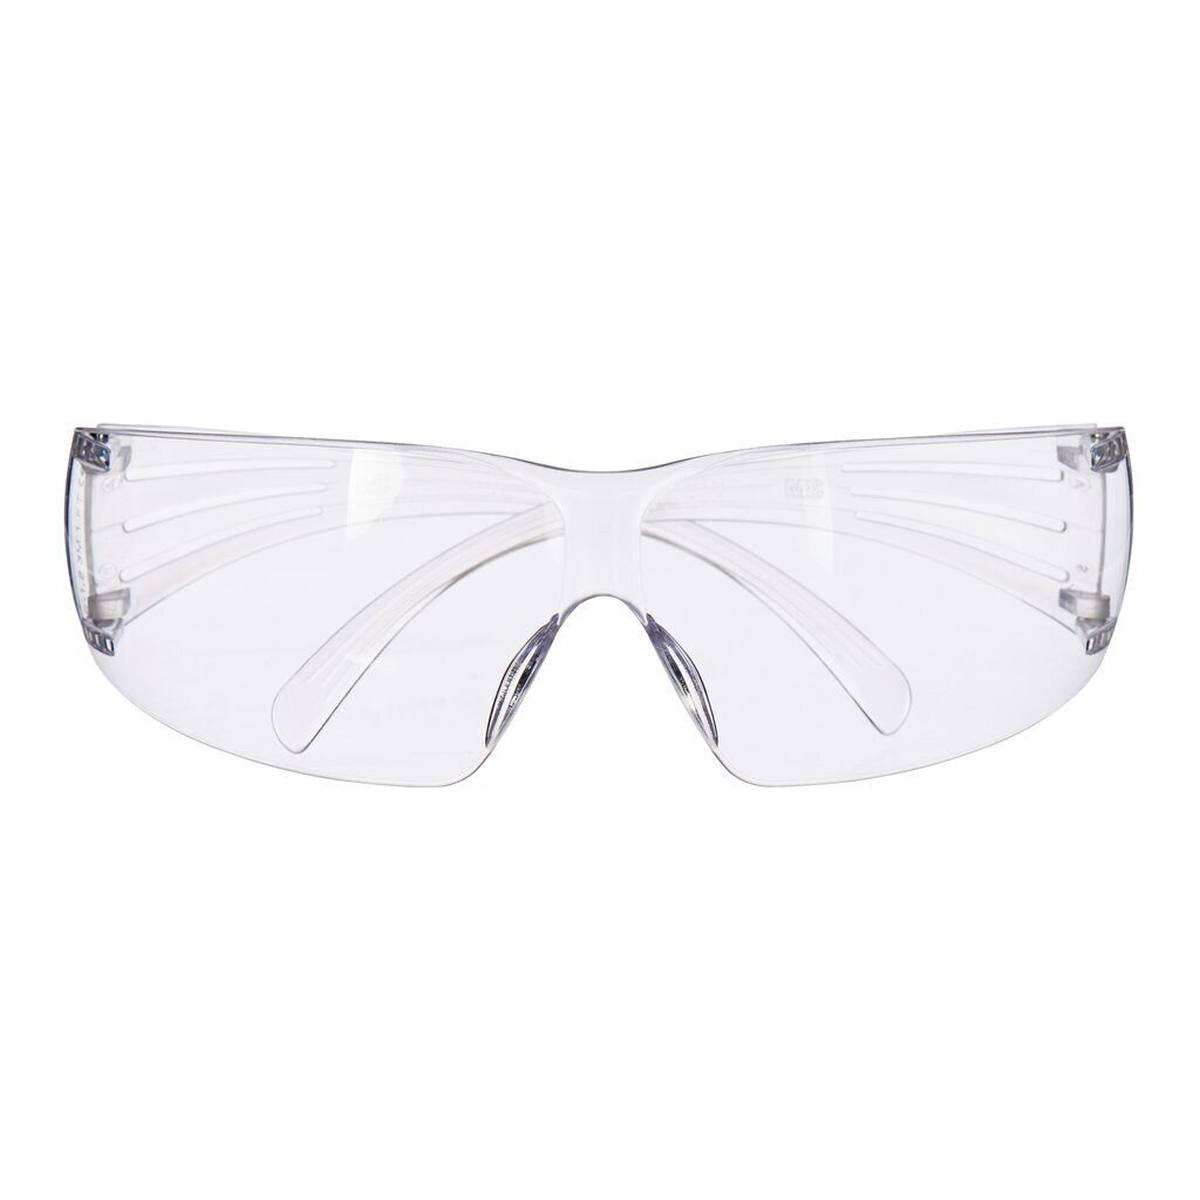 3M Gafas de protección SecureFit 200, tratamiento antirrayado, lente transparente, SF201AS-EU